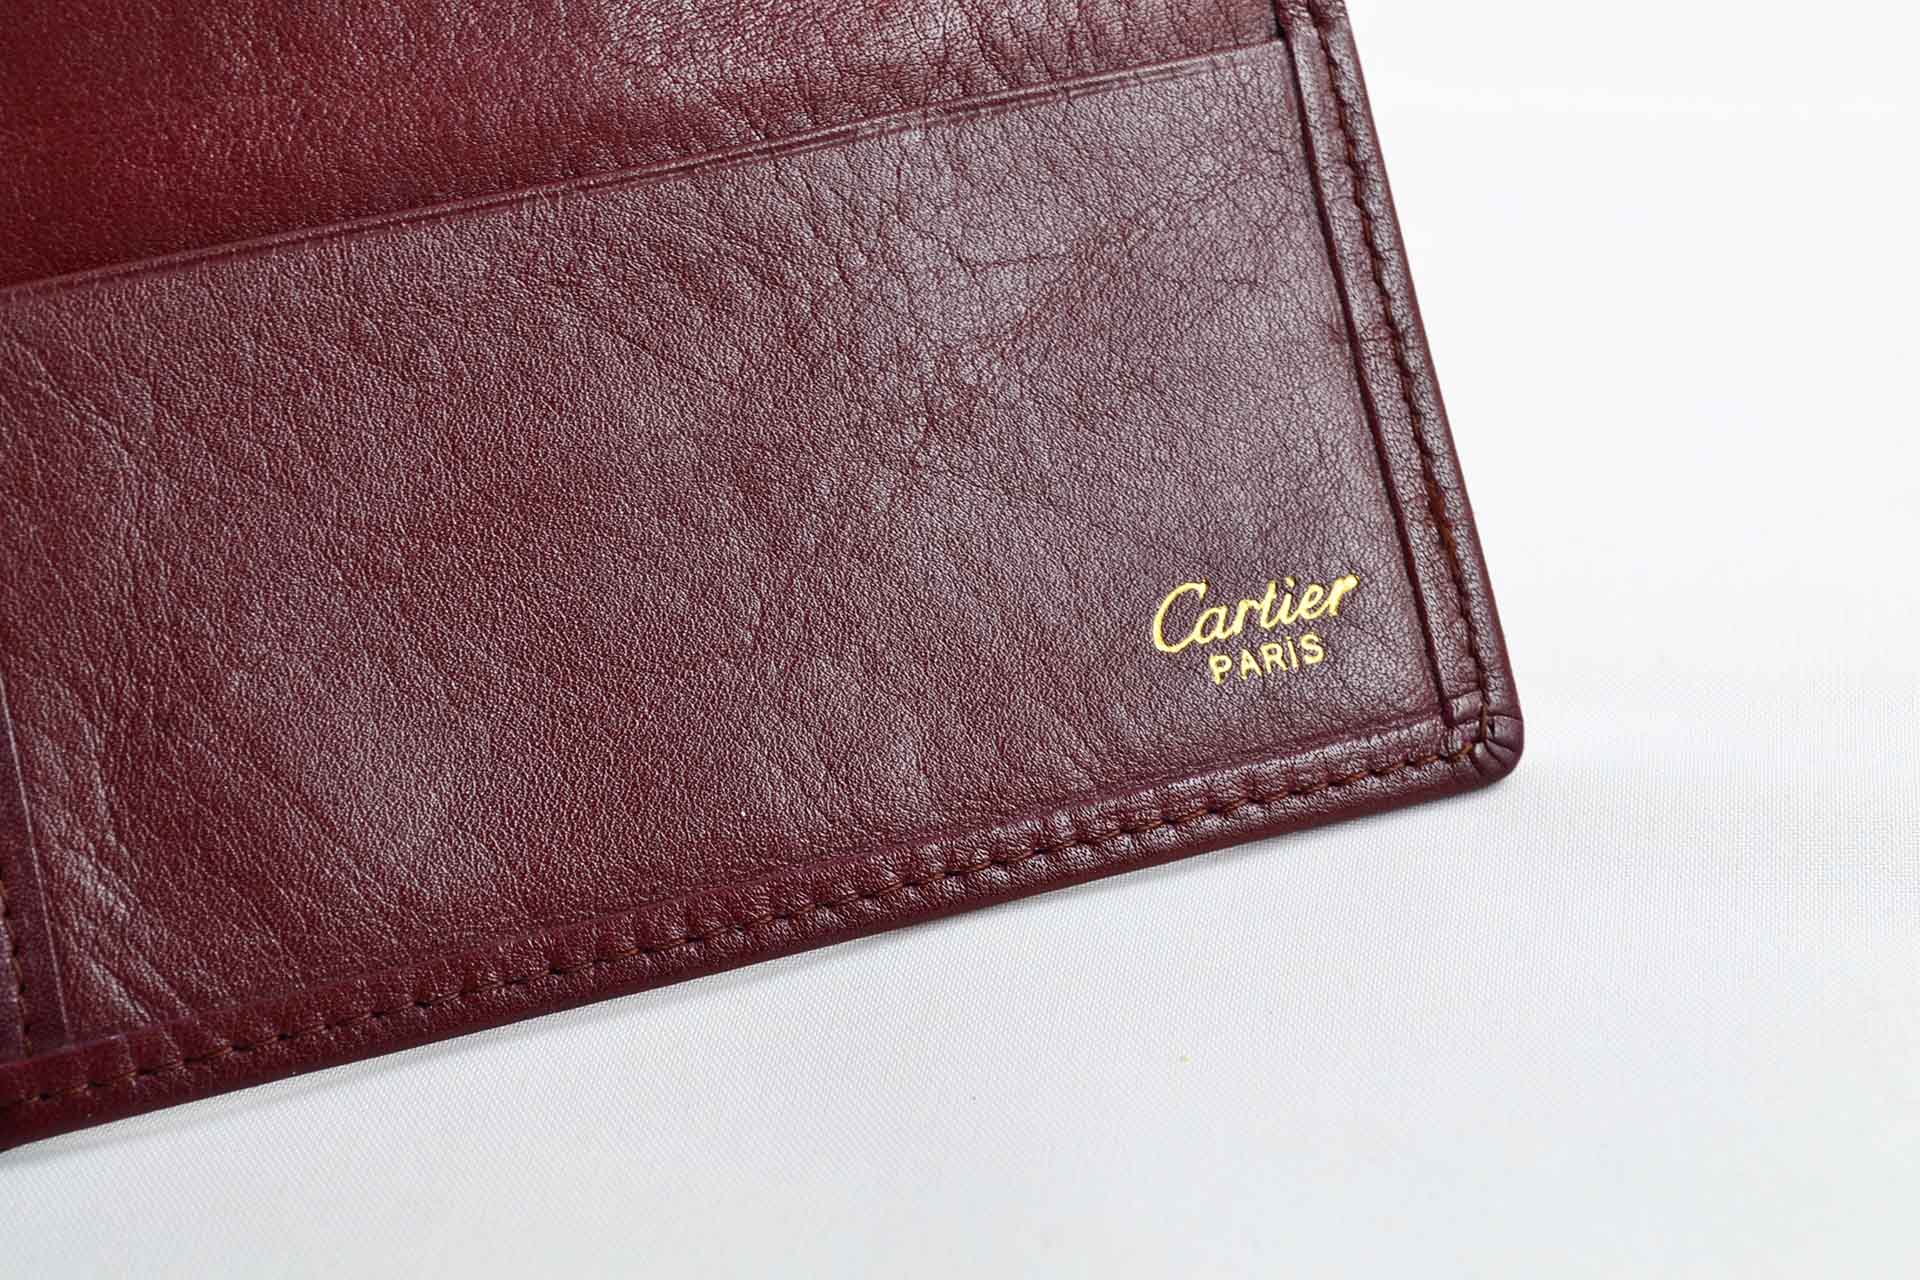 Cartier - Portefeuille Must de Cartier en cuir bordeaux - LumeVille